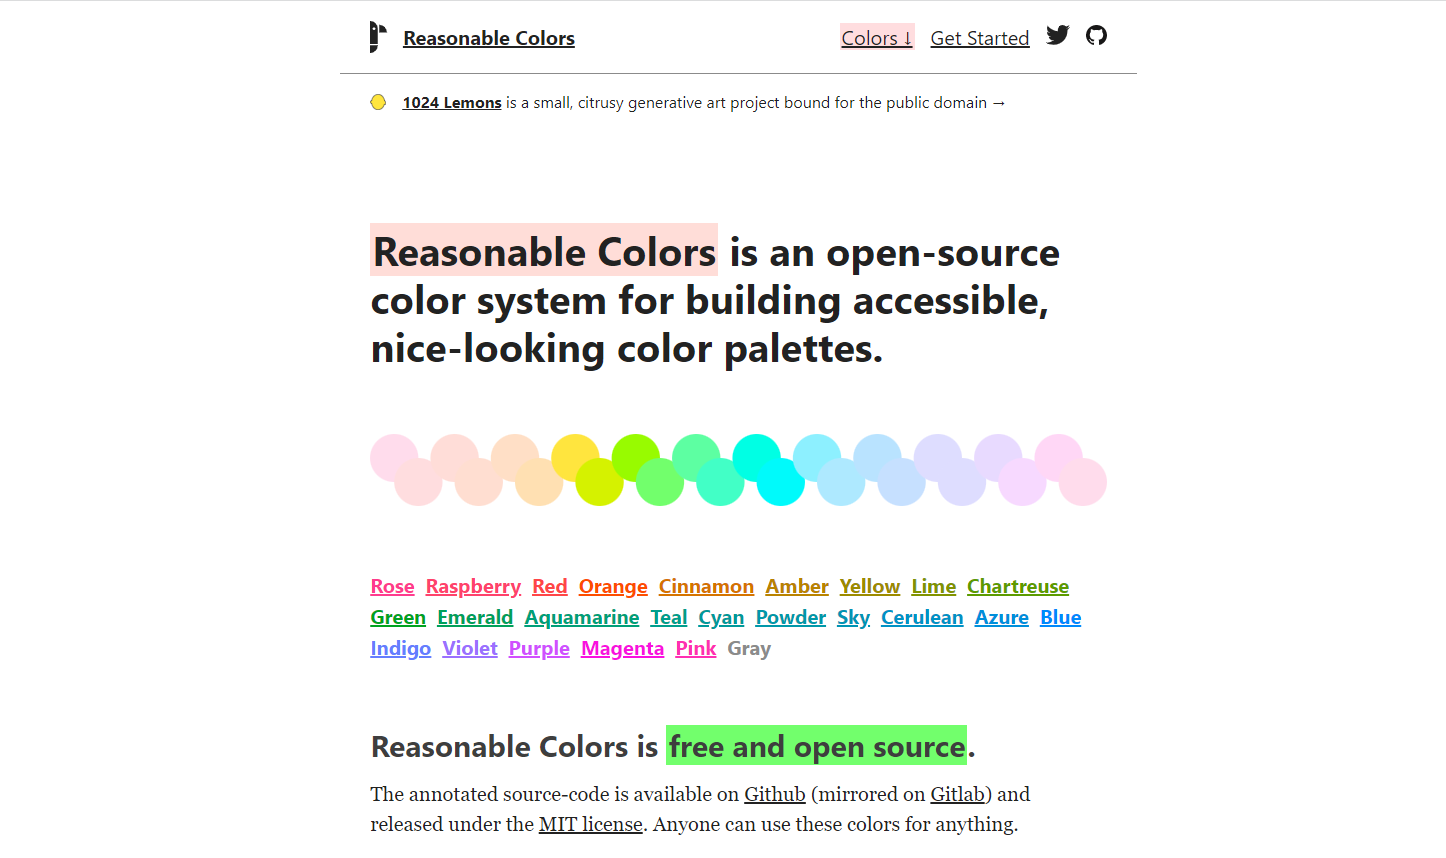 Reasonable Colors